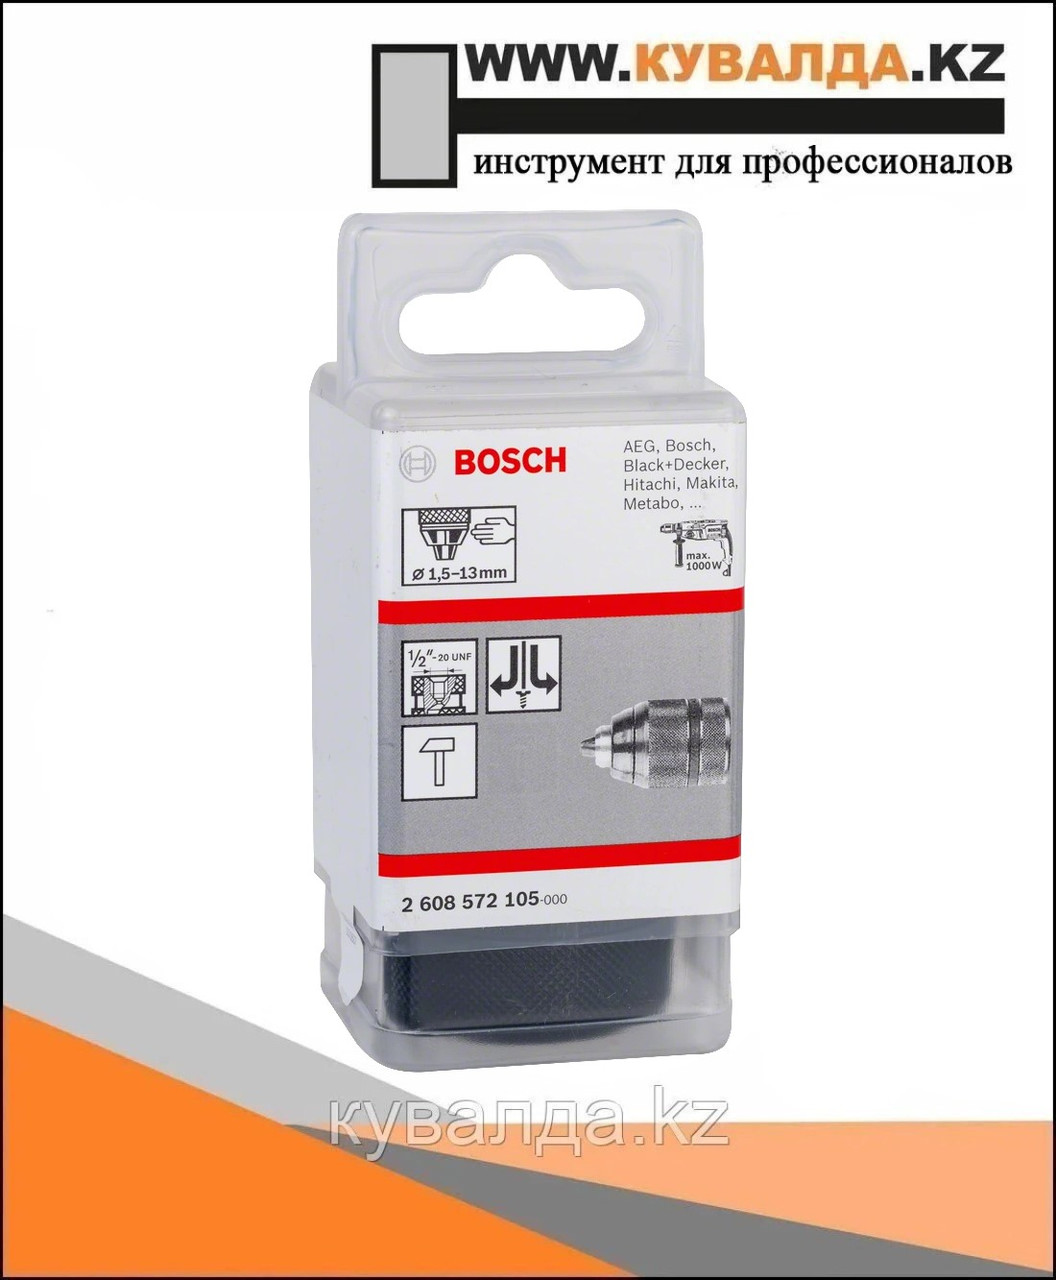 Быстрозажимной патрон Bosch 1.5-13мм 1/2"-20